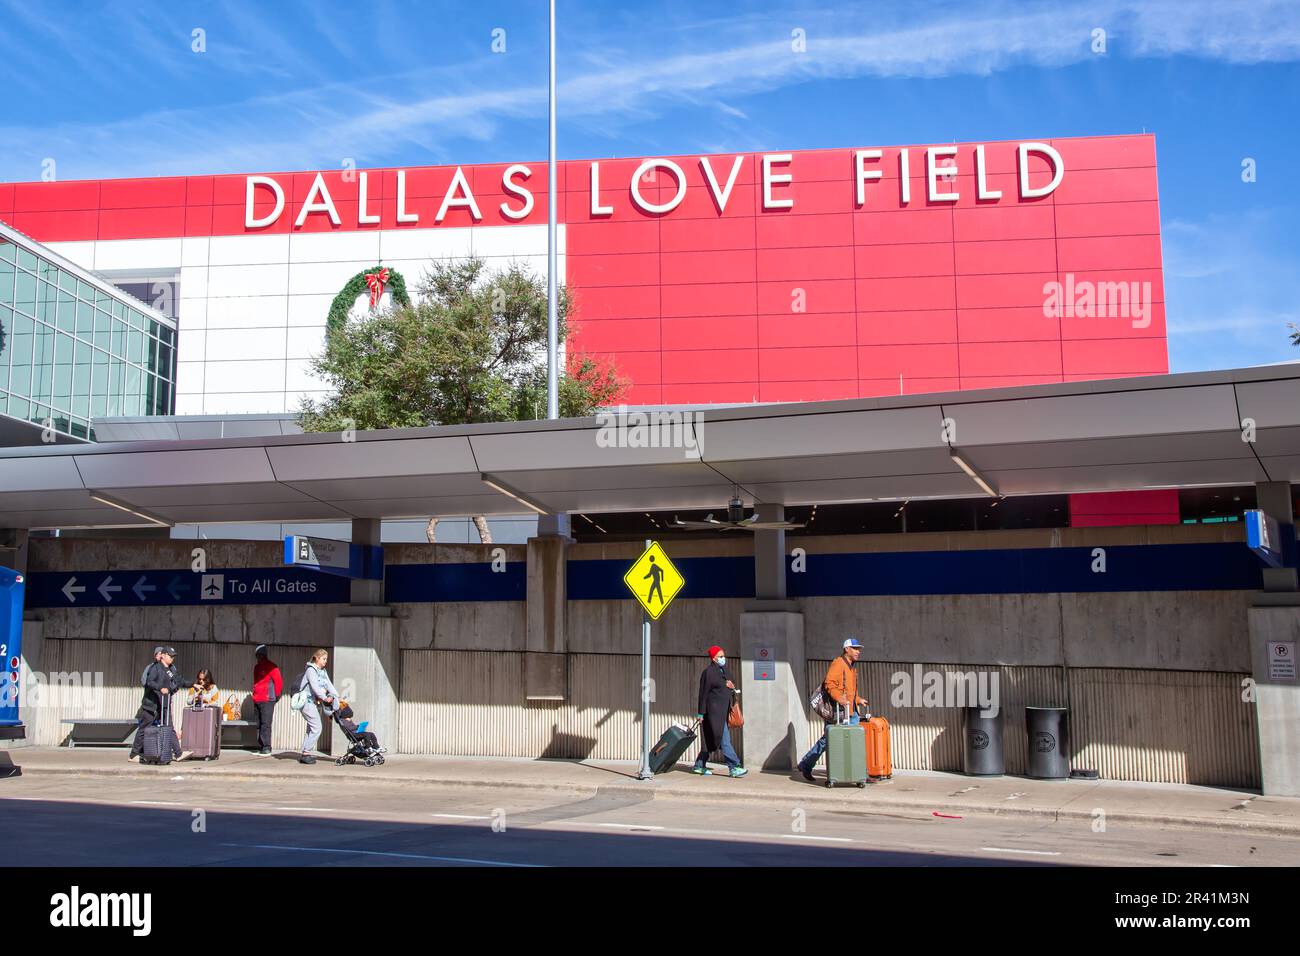 Dallas Love Field Airport in the USA Stock Photo